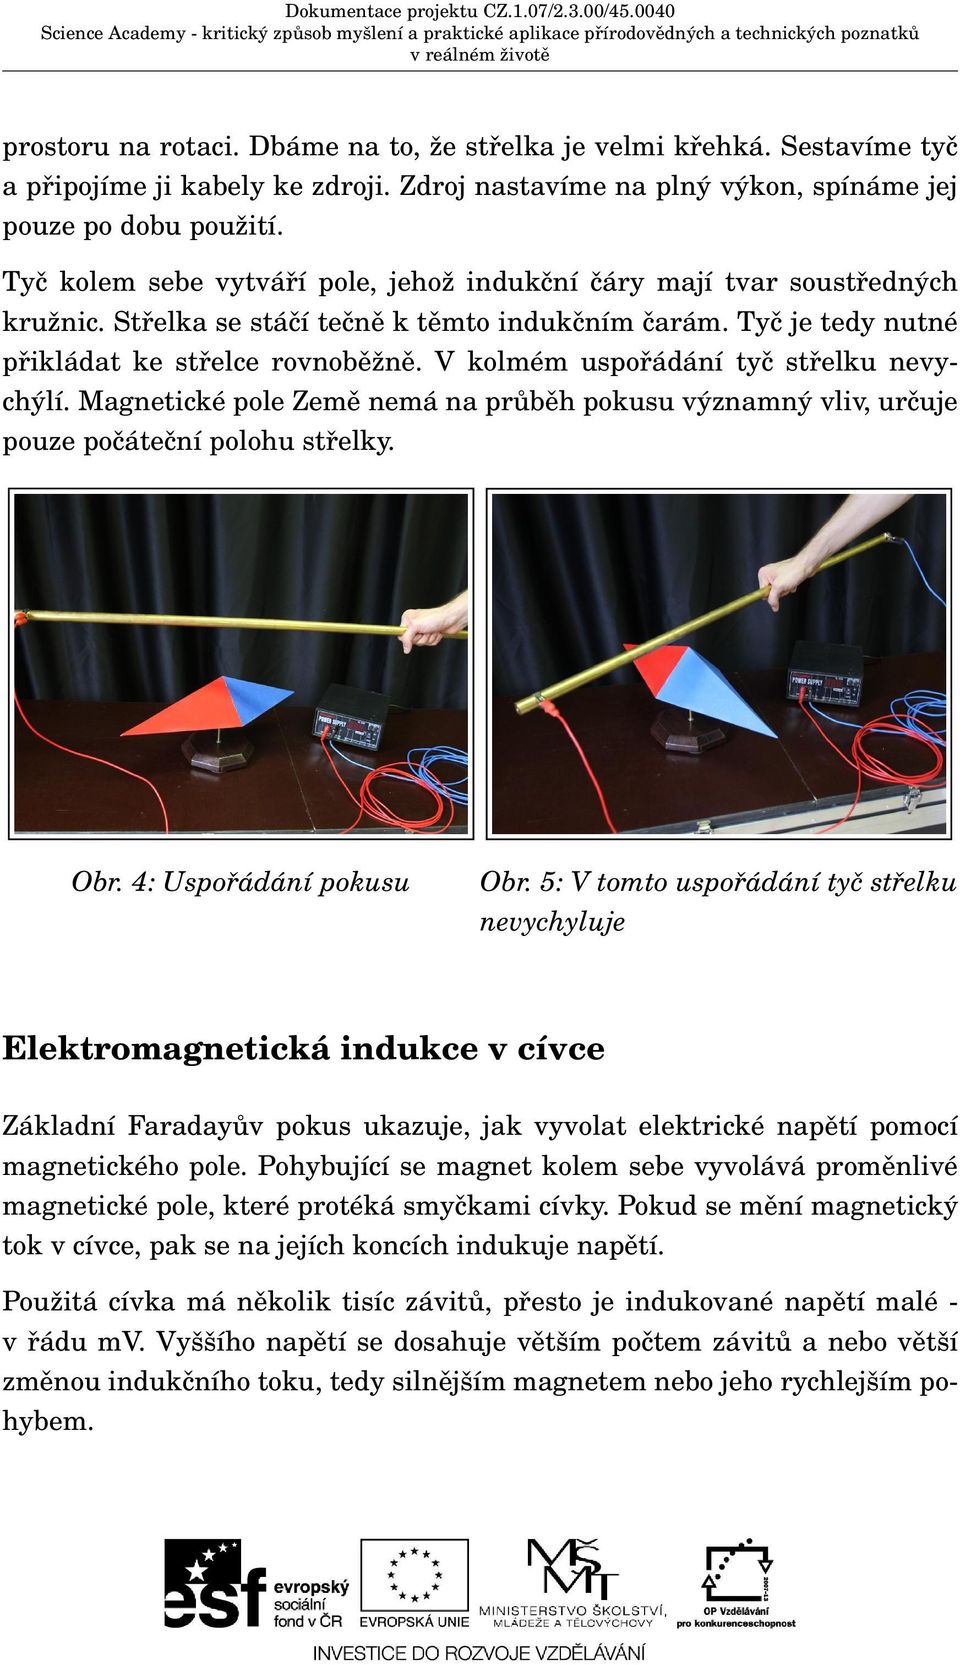 Experimenty z elektromagnetismu - PDF Stažení zdarma